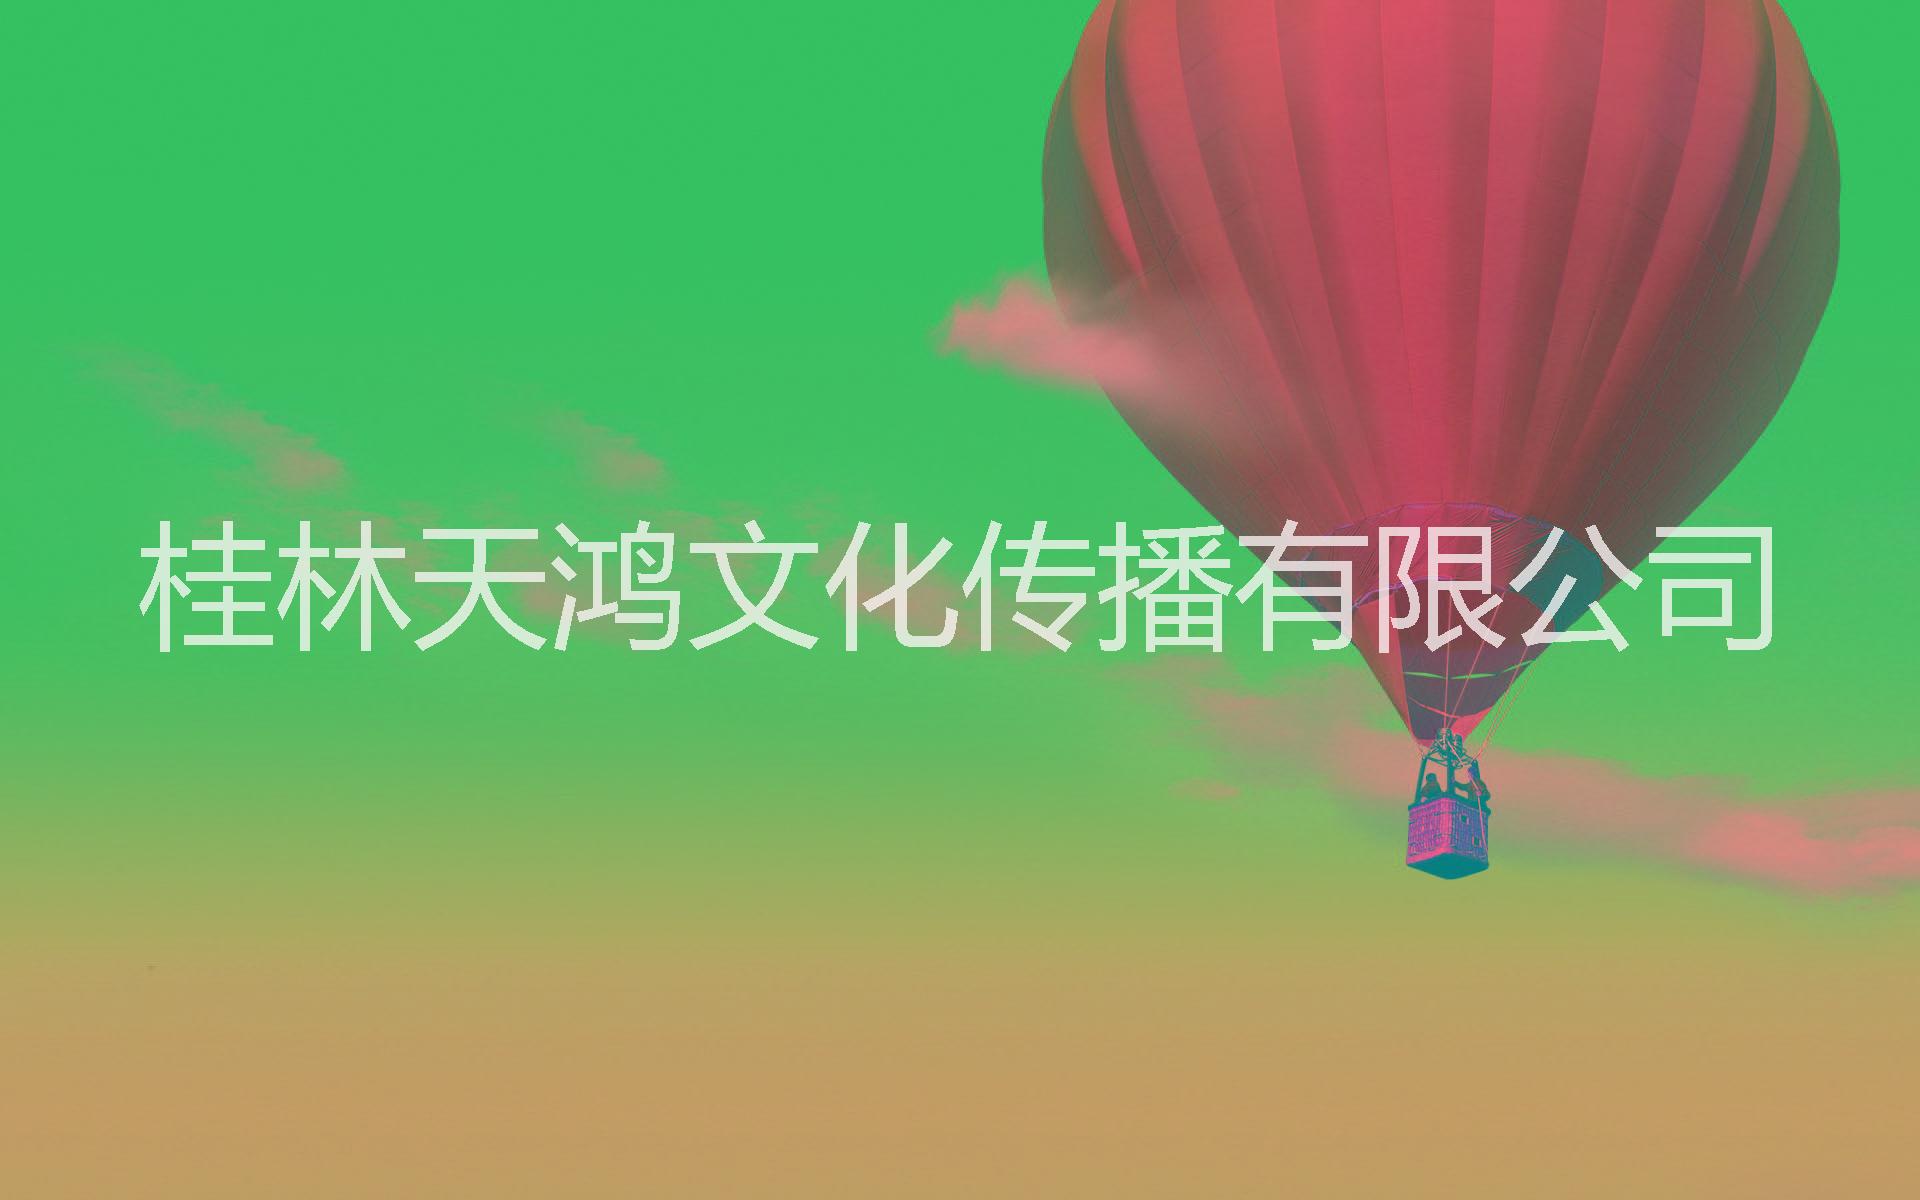 贵州安顺热气球广告租赁出租贵州安顺热气球广告租赁出租,铜仁热气球广告,毕节载人热气球出租